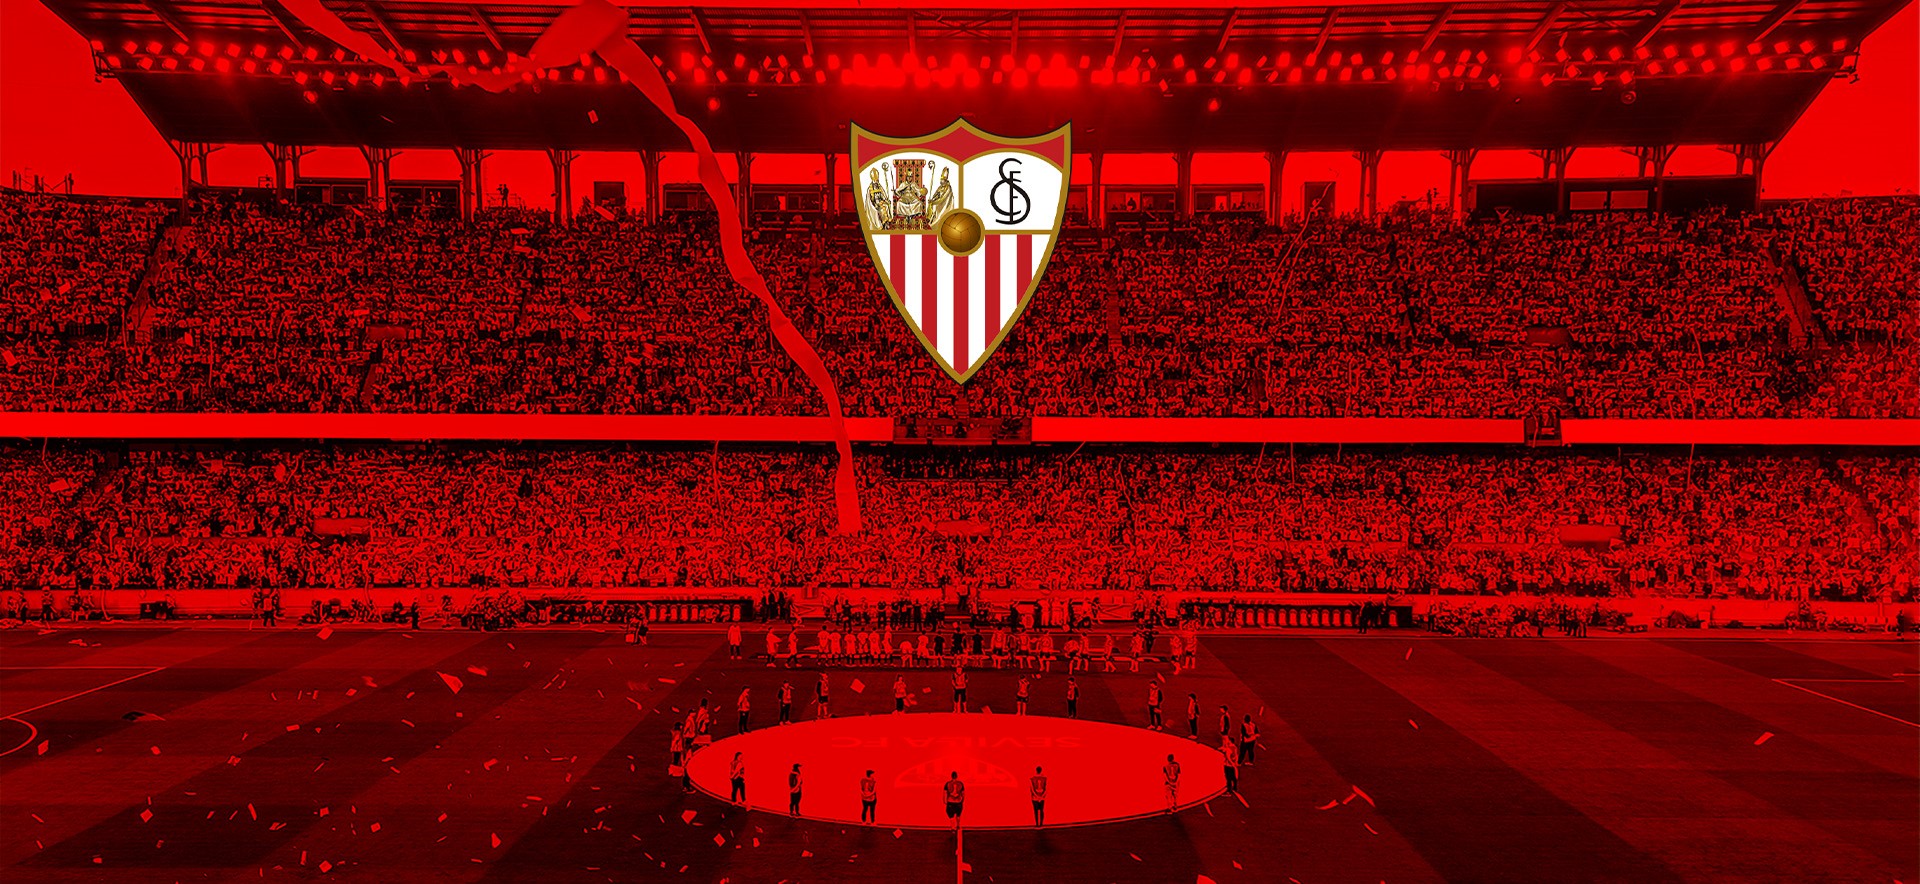 El  éxito de la campaña de abonos, último hito de la transformación digital en el Sevilla FC